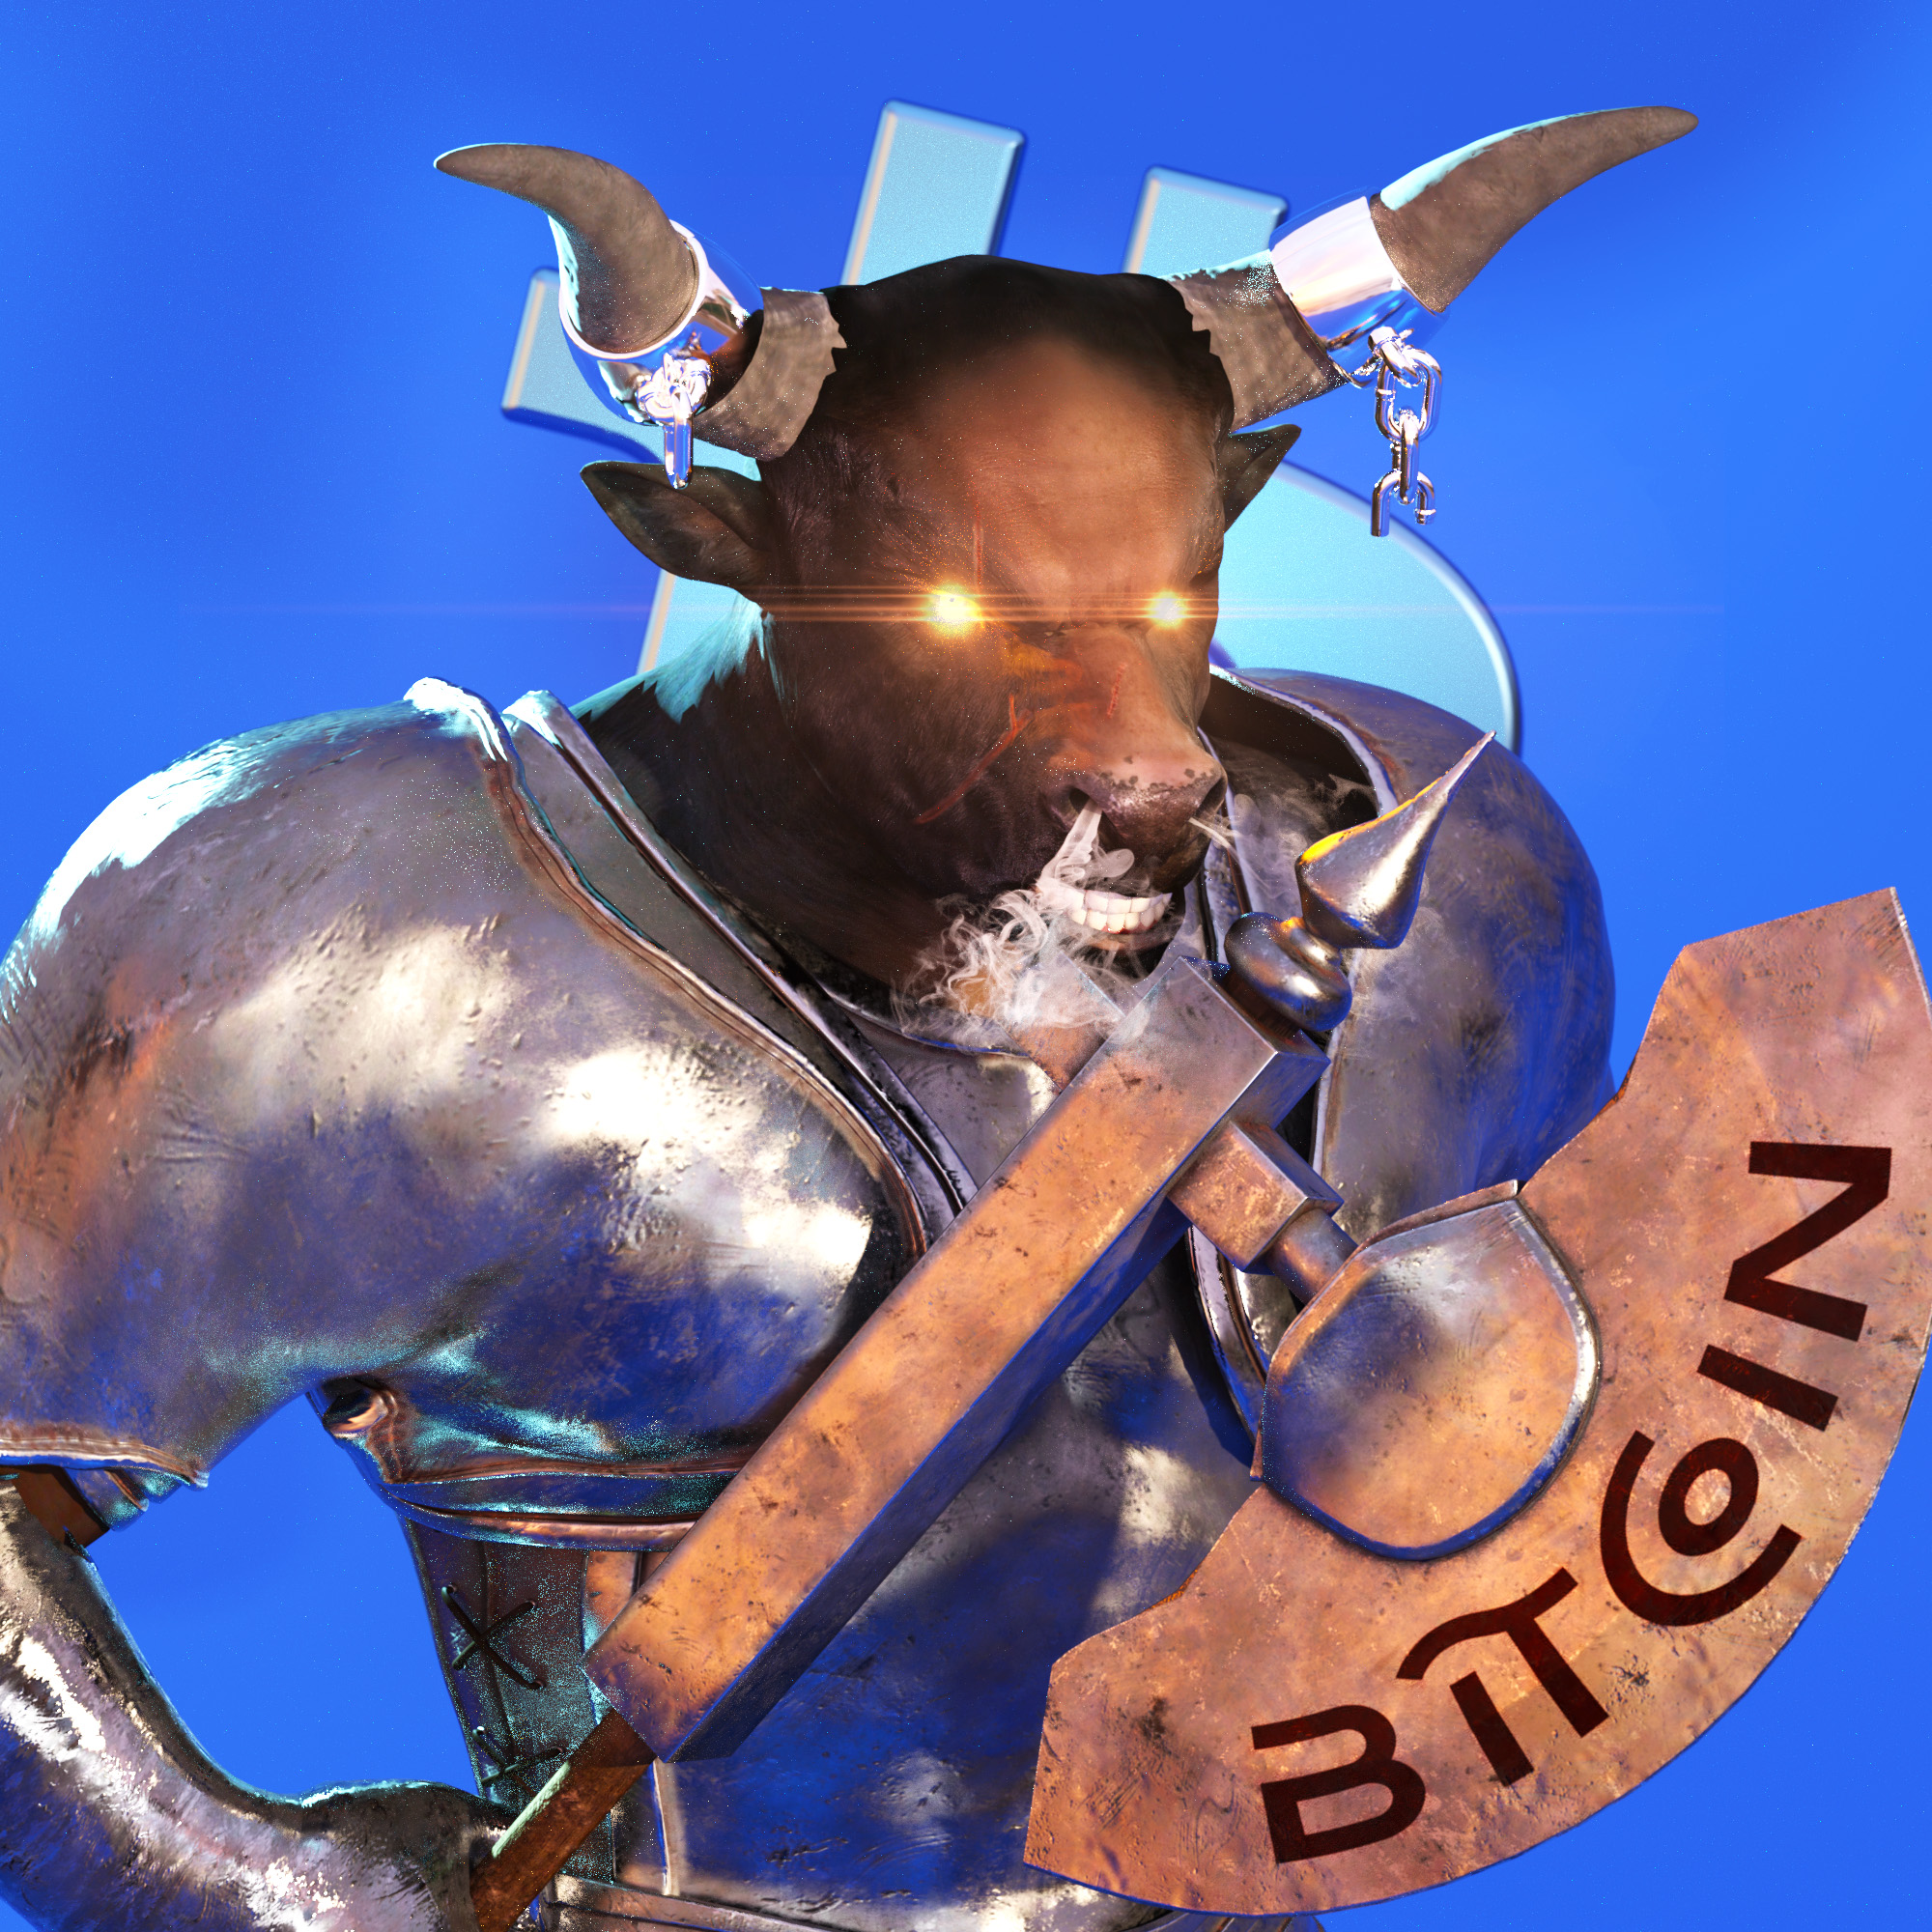 Avatar Bitcoiner - Bull Knight